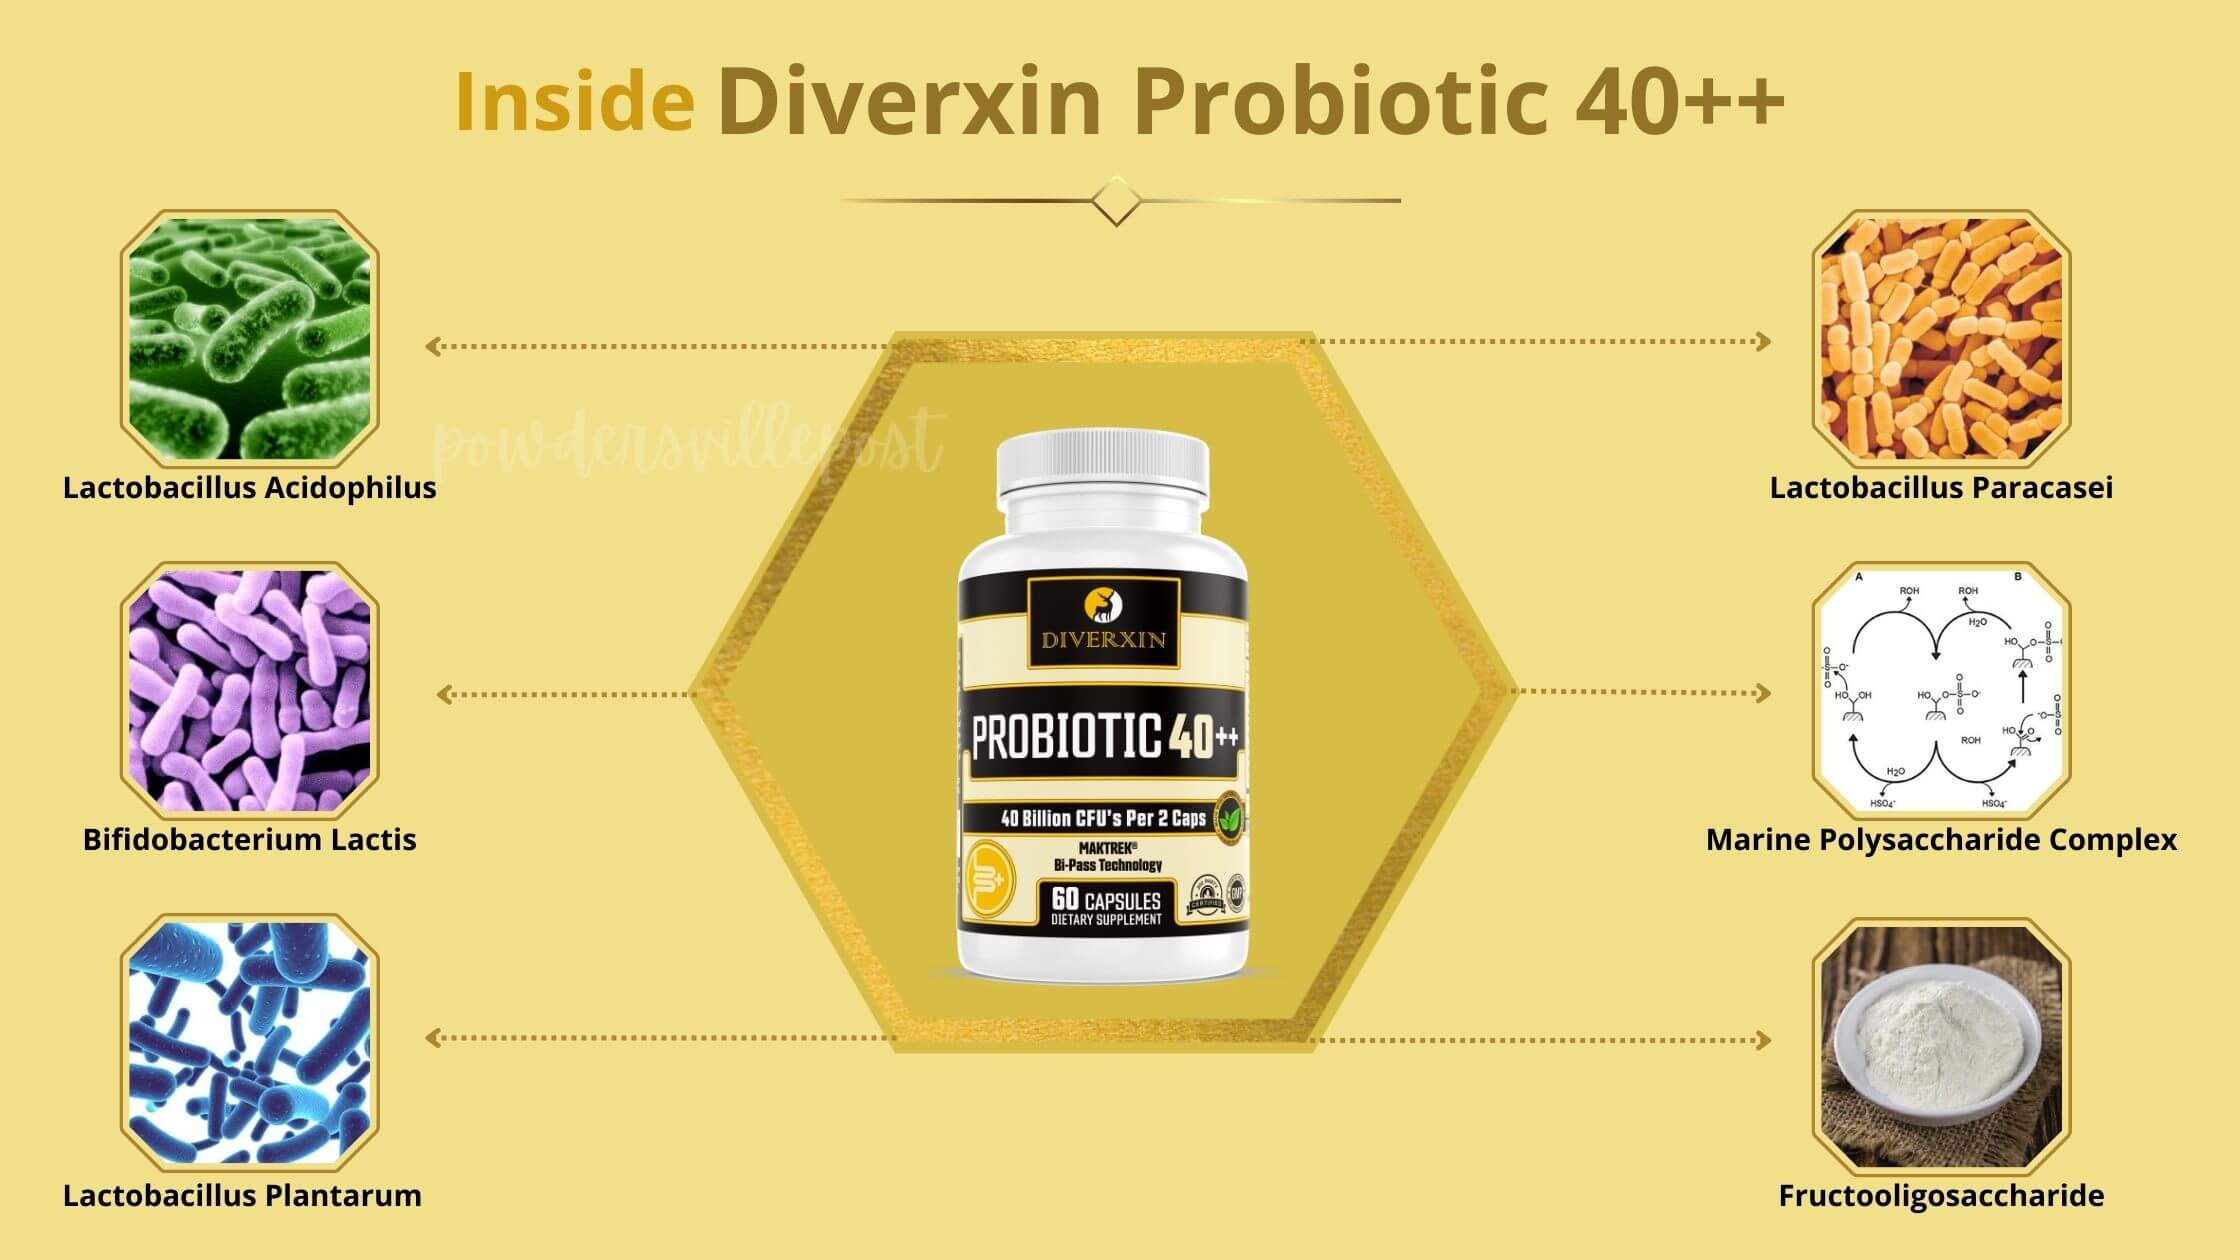 Diverxin Probiotic 40++ Ingredients